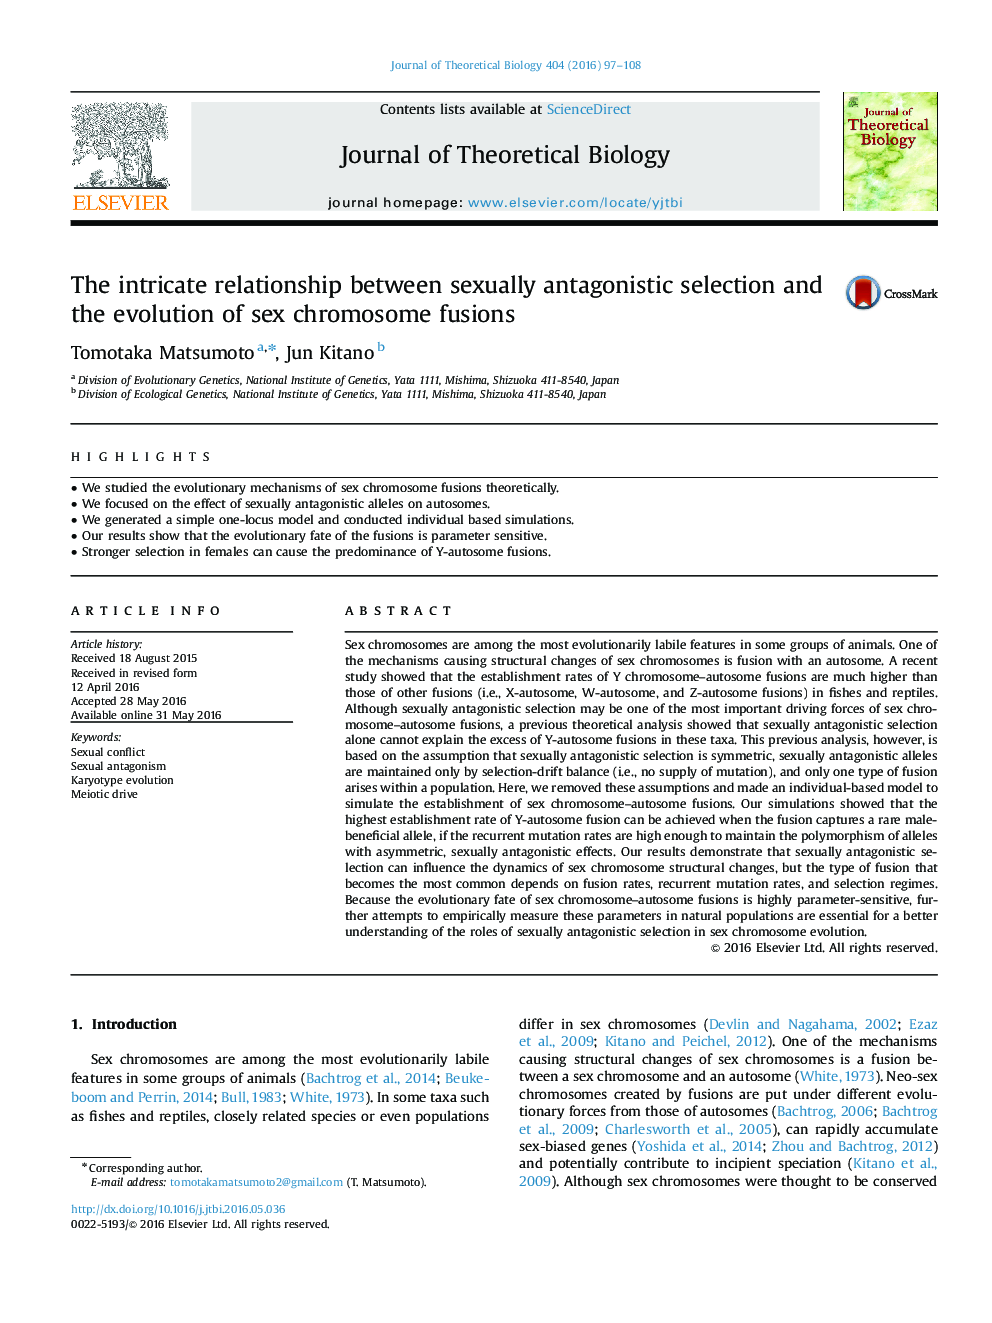 رابطه پیچیده بین انتخاب جنسیتی آنتاگونیستی و تکامل اتصالات کروموزوم جنس 